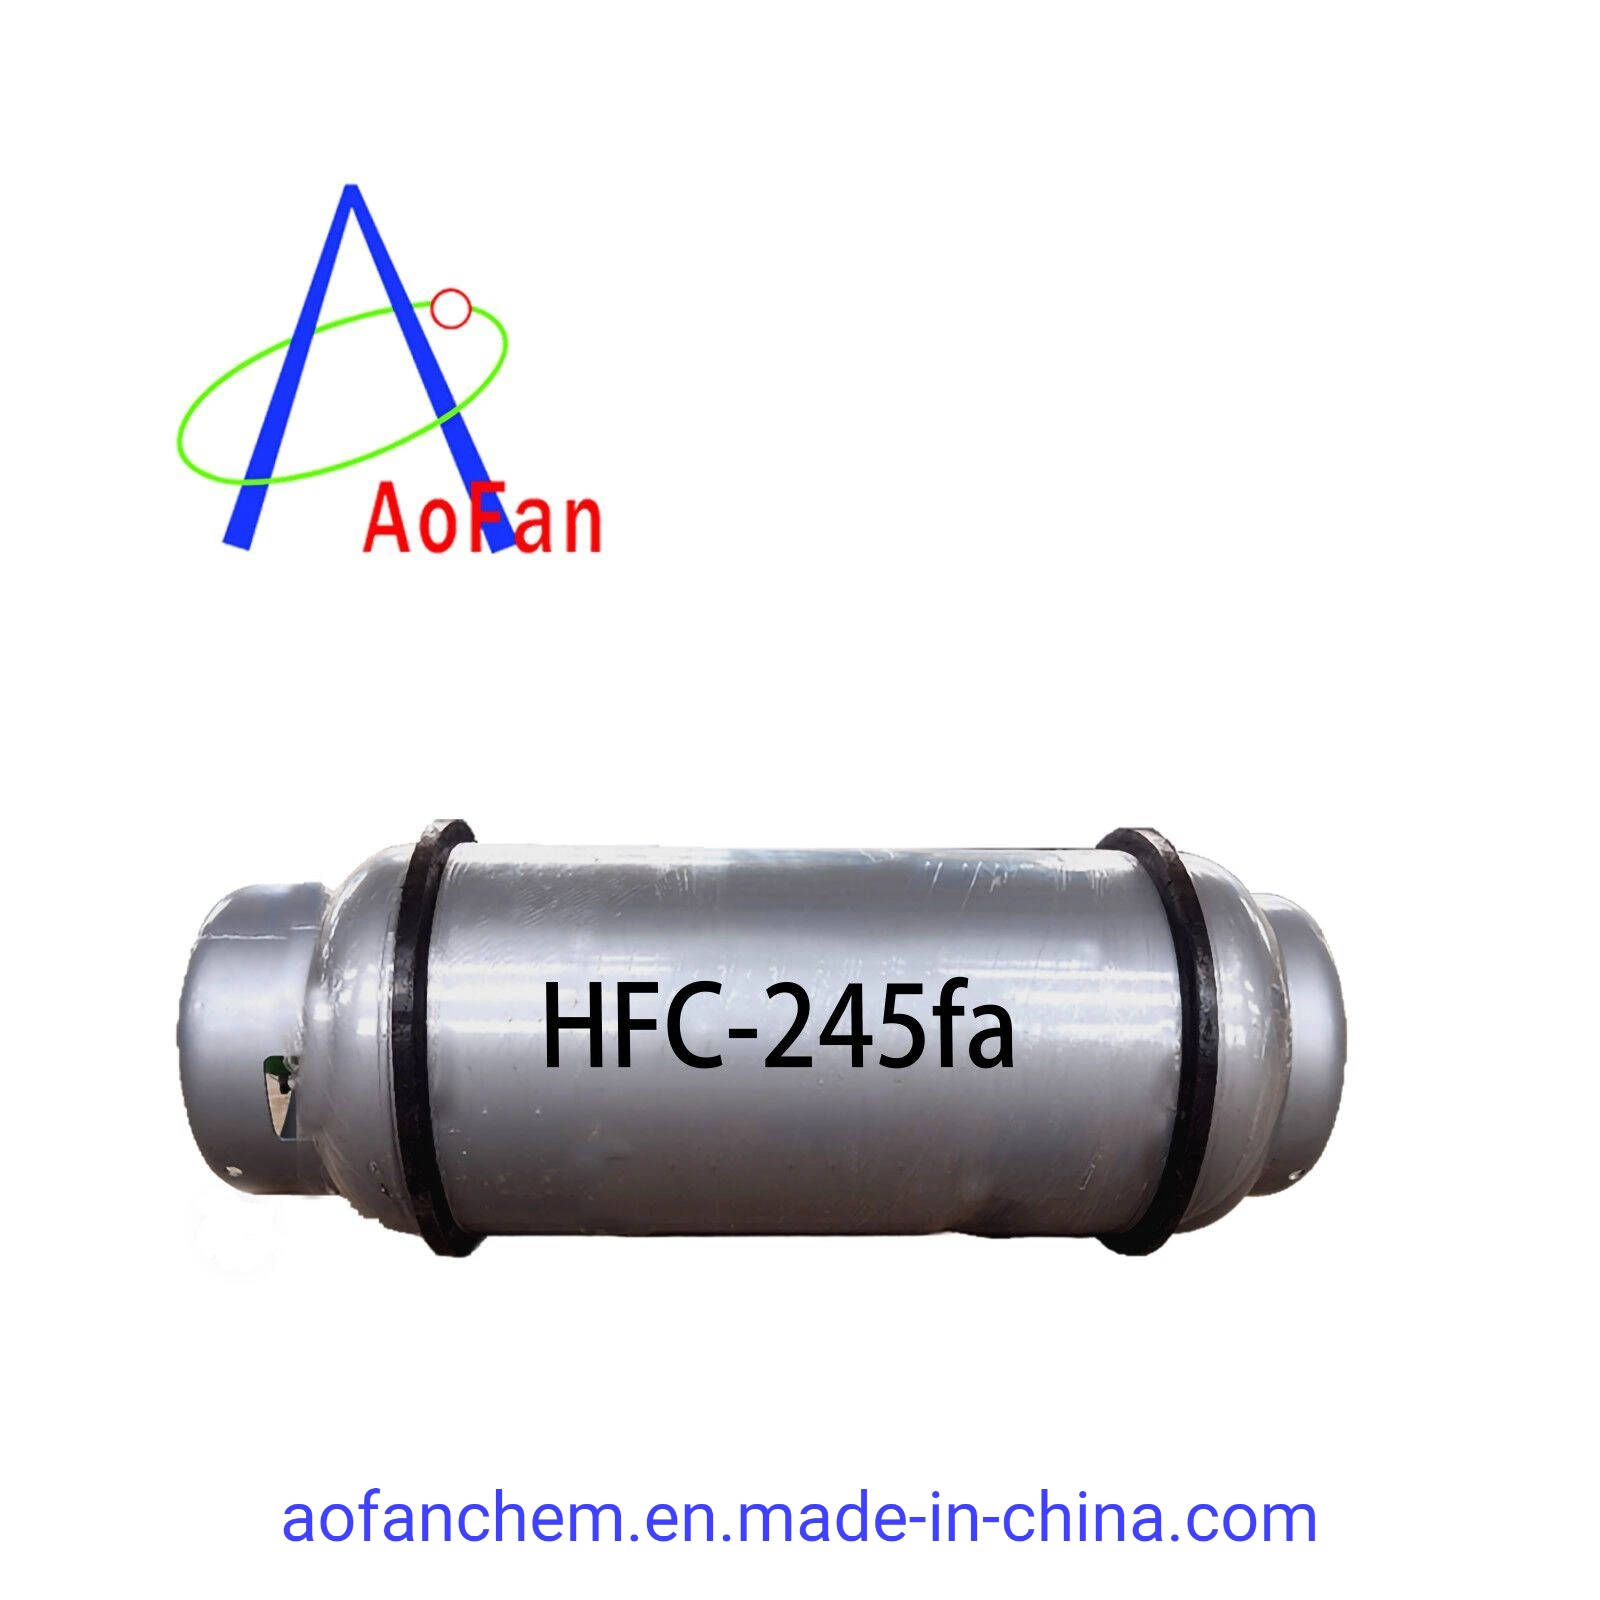 precio de Originales de fábrica de refrigerante de flúor fabricante chino de China, el HFC-245fa